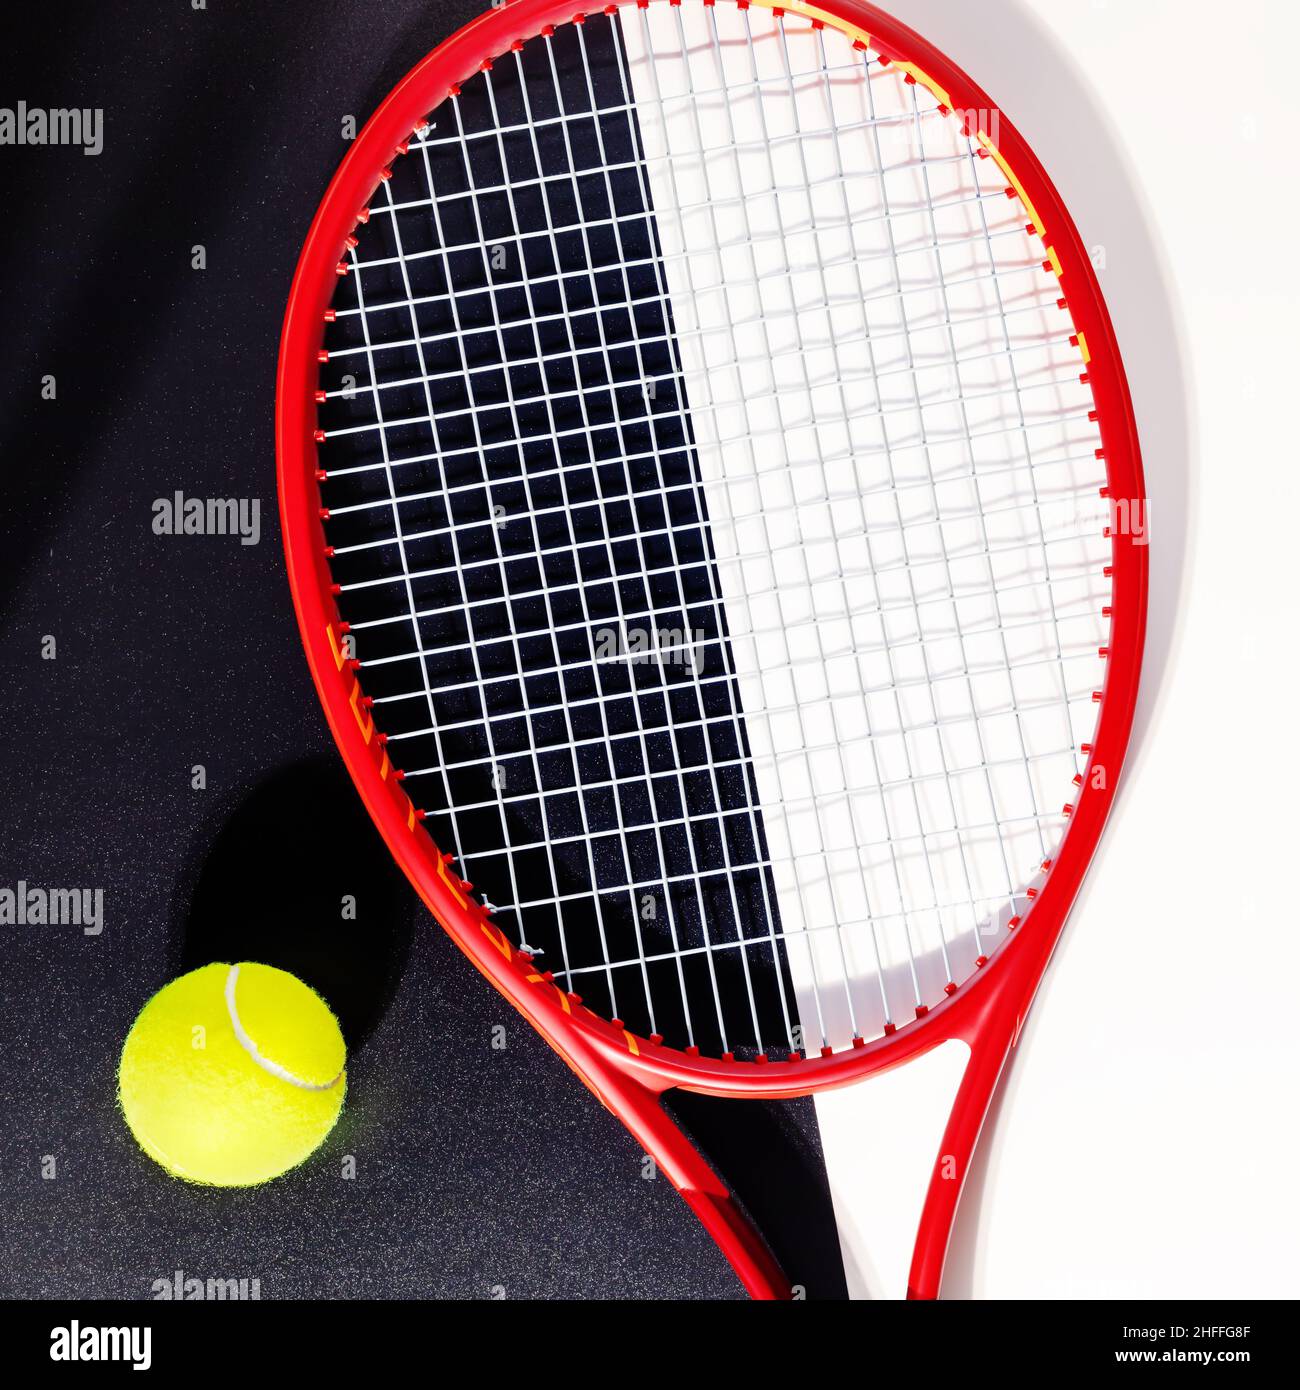 Tennis.Composition sportive avec une raquette de tennis et une balle sur fond noir et blanc.Le sport et un mode de vie sain.Le concept de compétition de tennis Banque D'Images